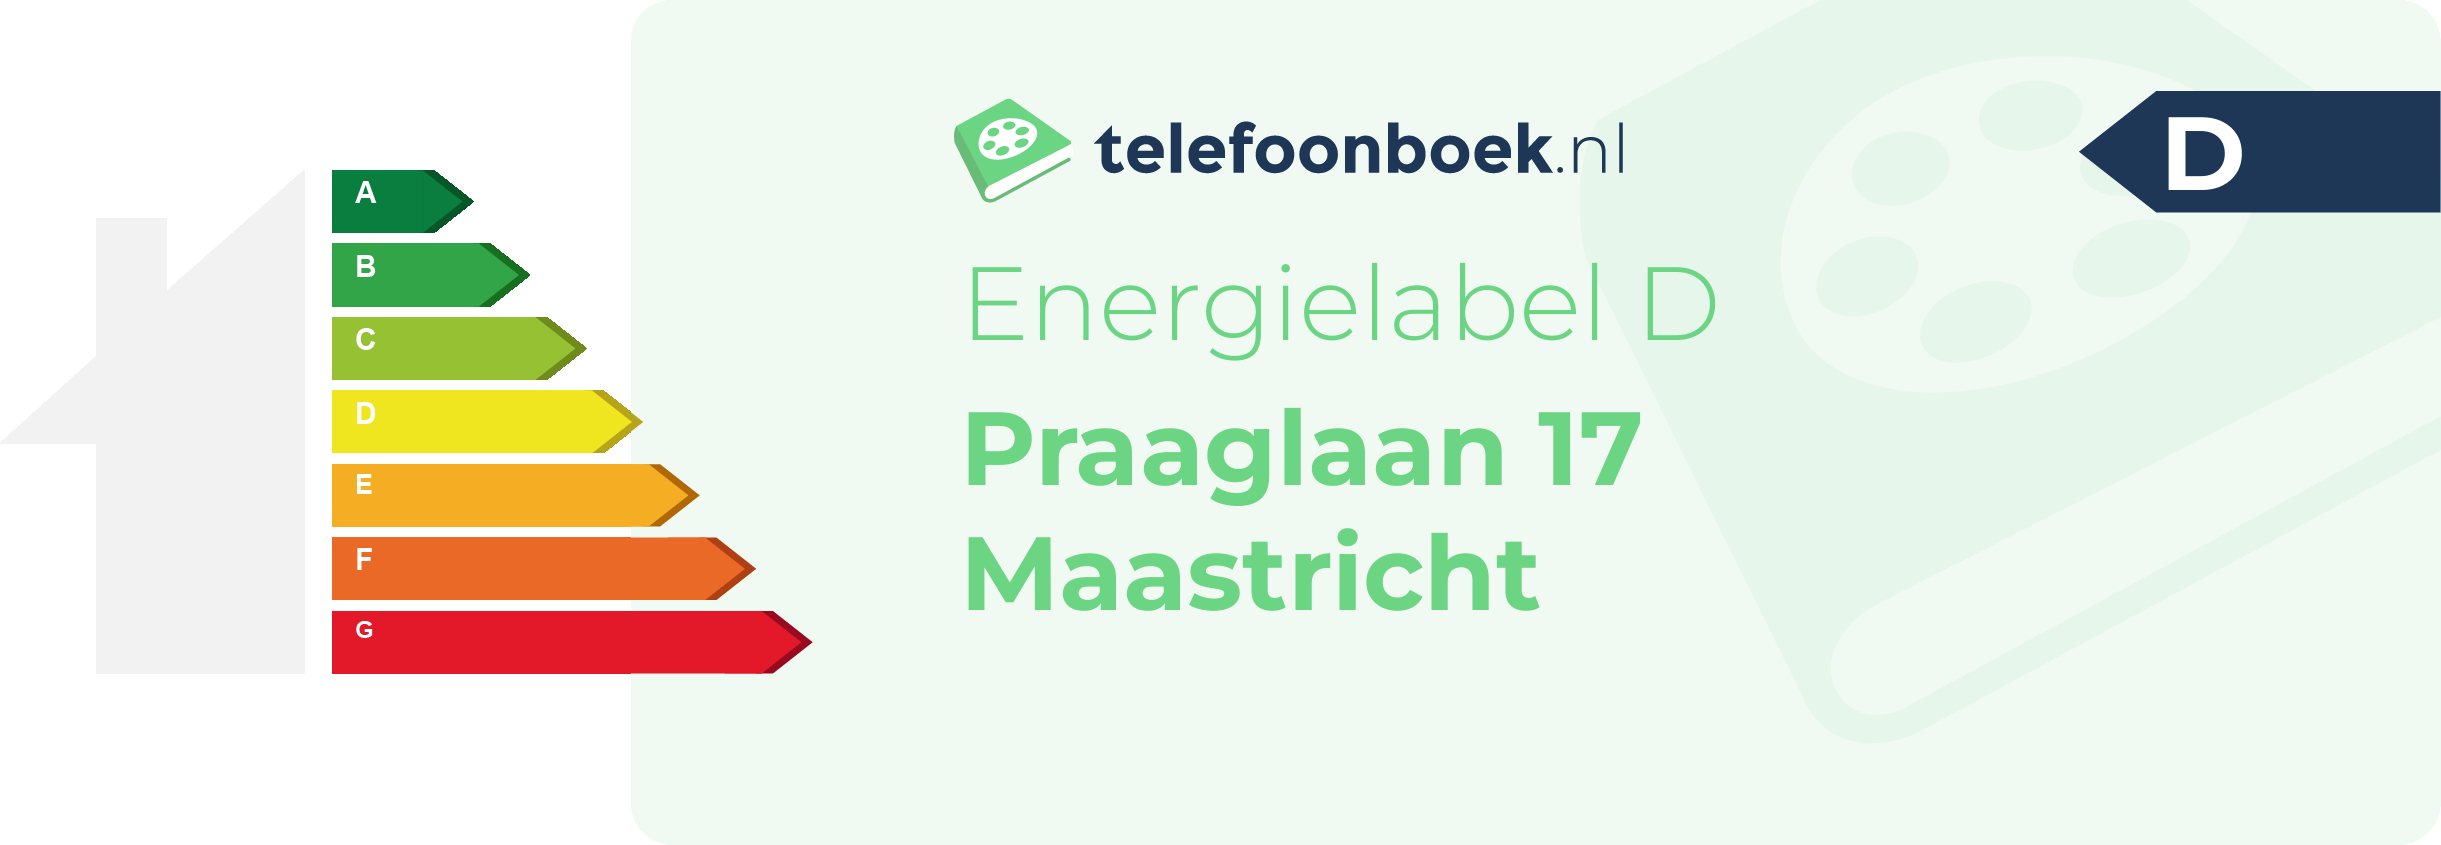 Energielabel Praaglaan 17 Maastricht